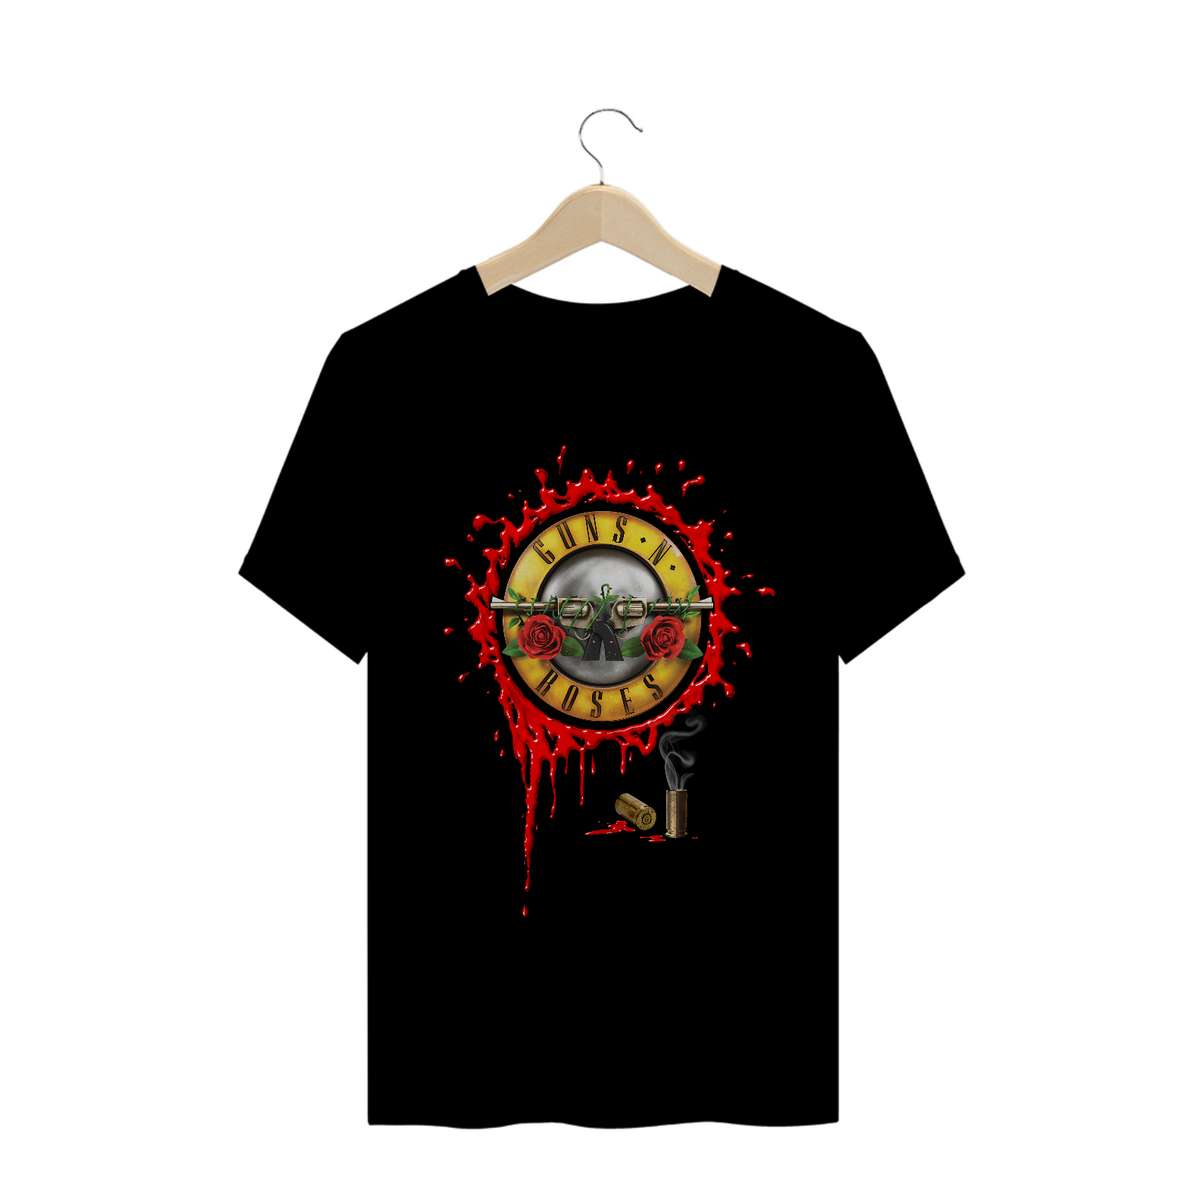 Nome do produto: Camisa Guns N\' Roses - Bullet com sangue